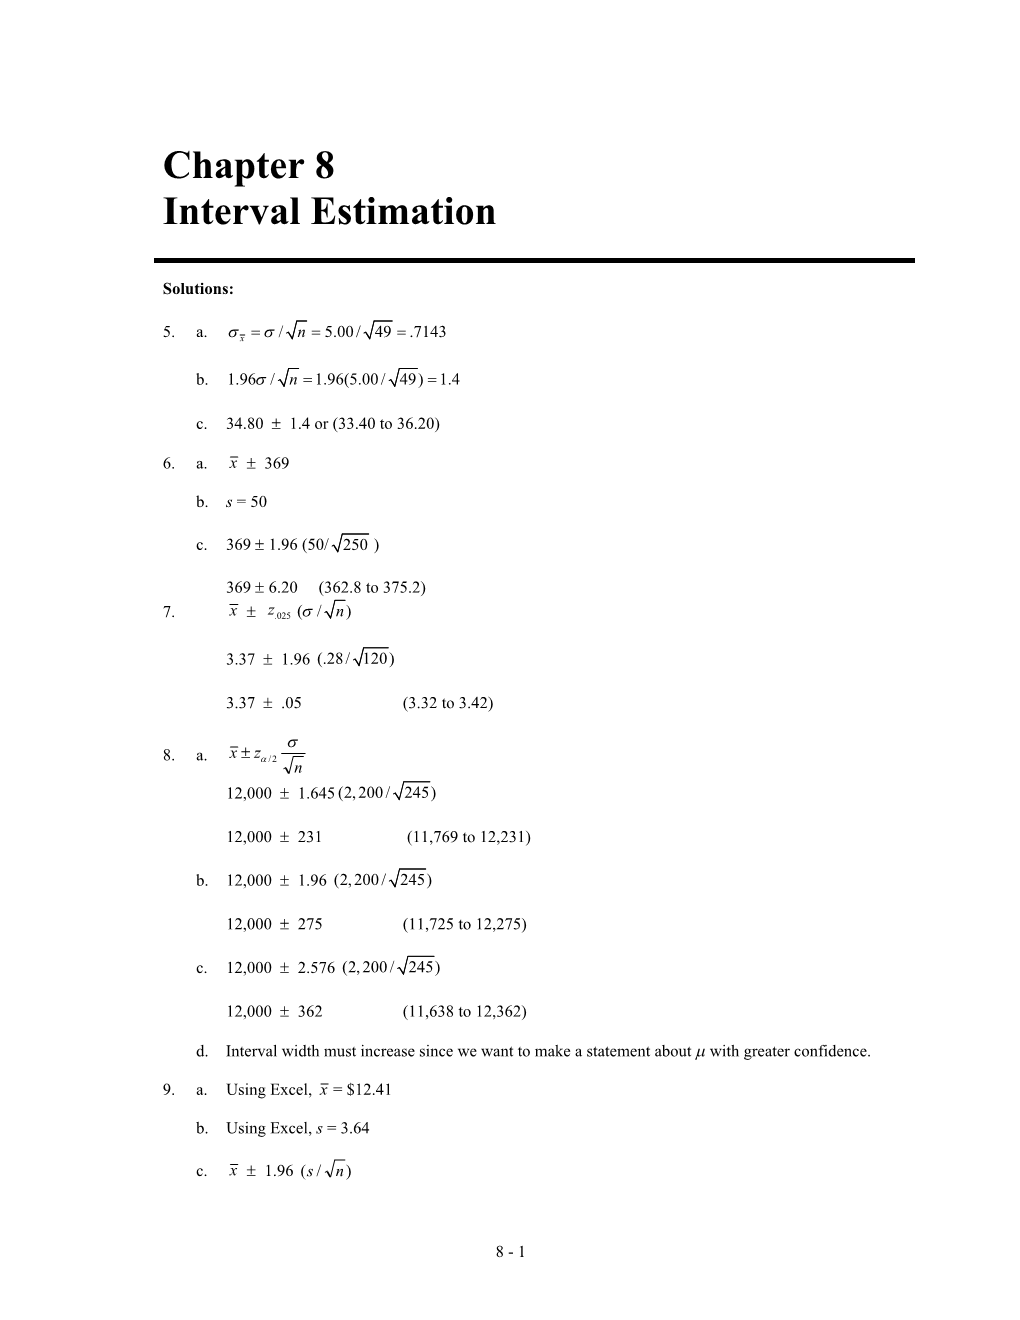 Interval Estimation